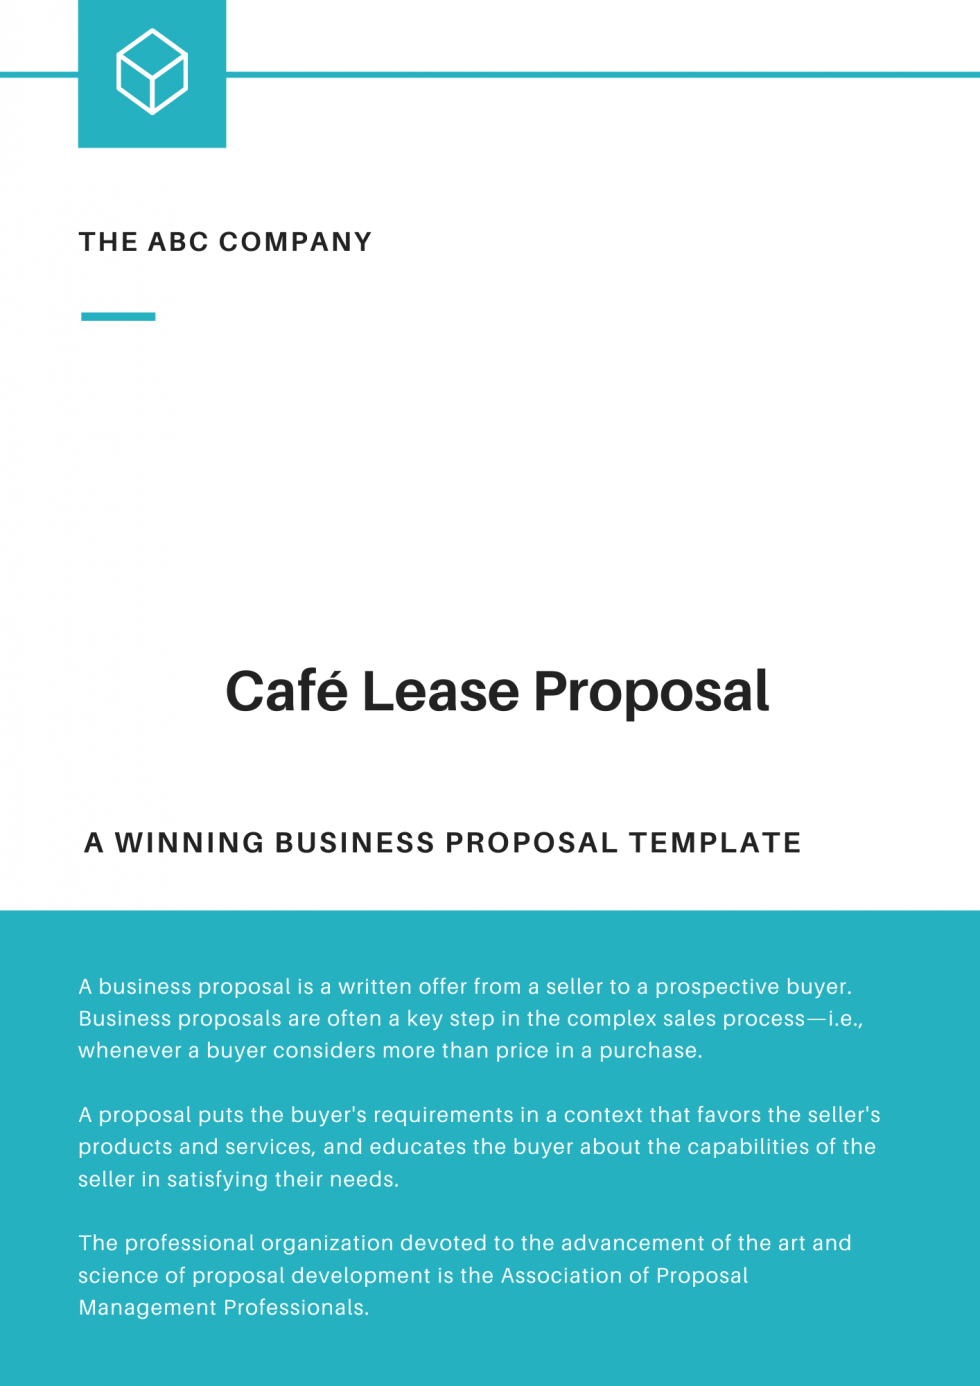 Café Lease Business Proposal